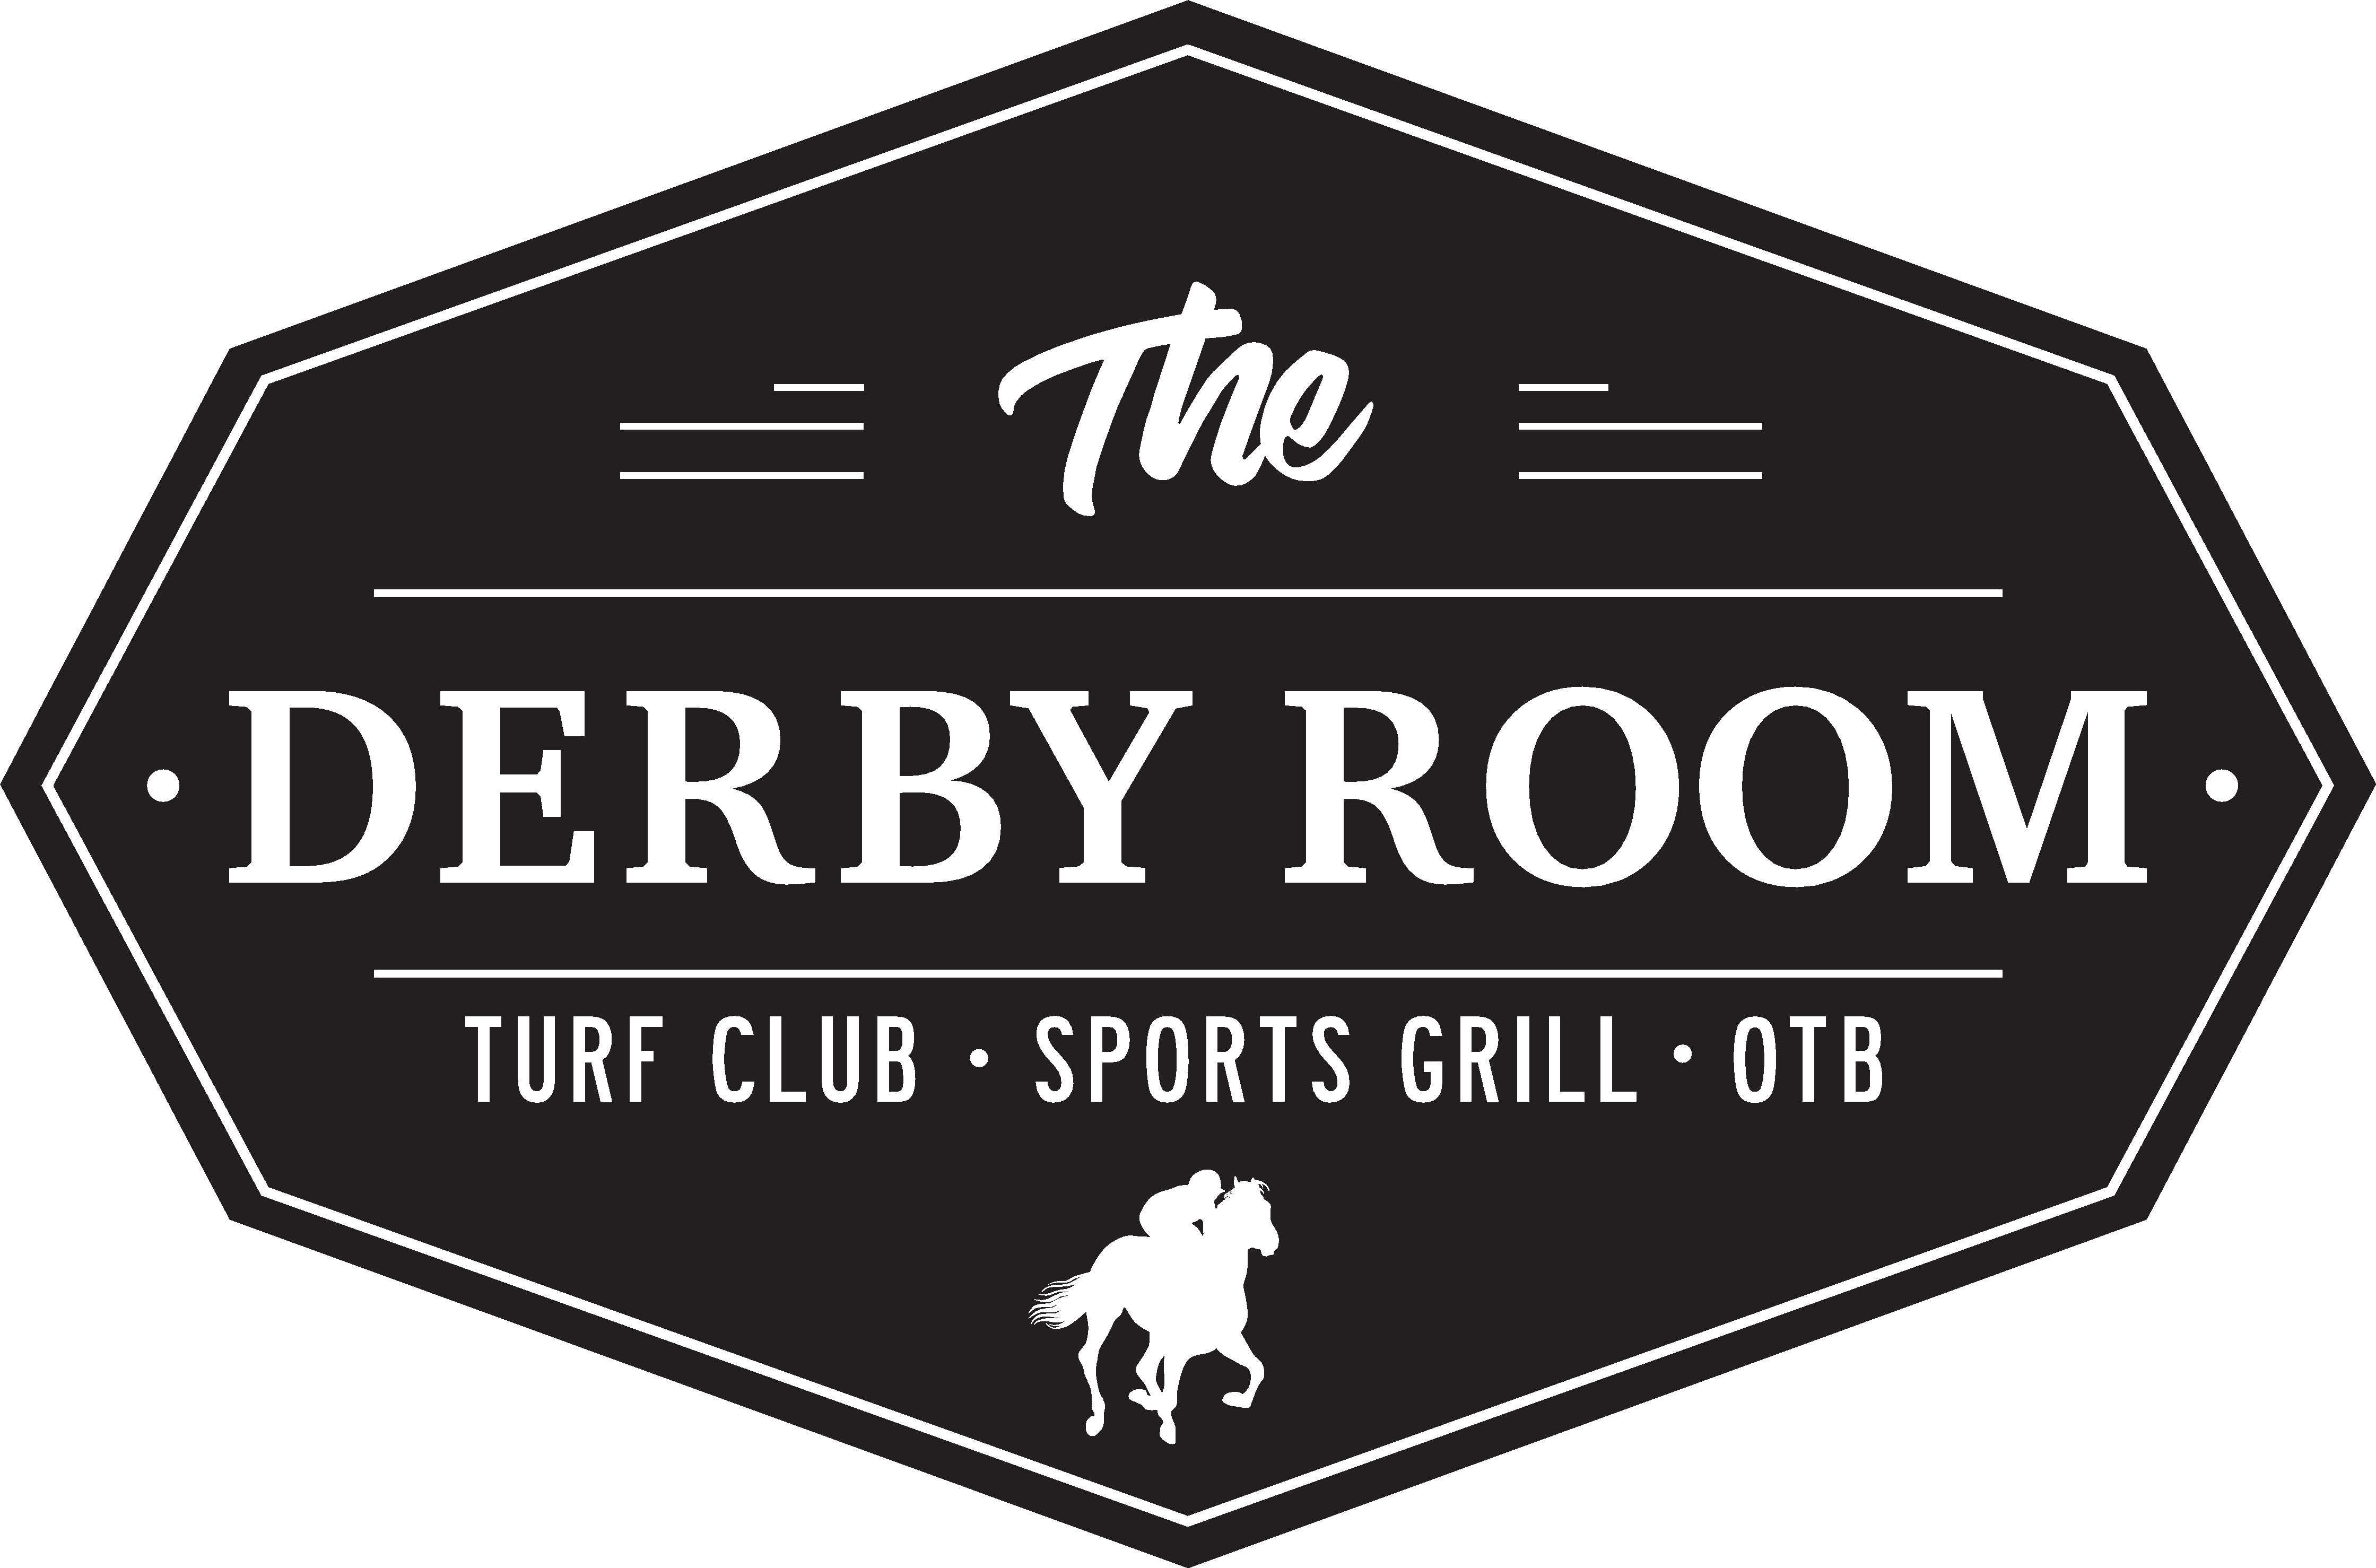 The Derby Room - Pomona 2201 North White Avenue